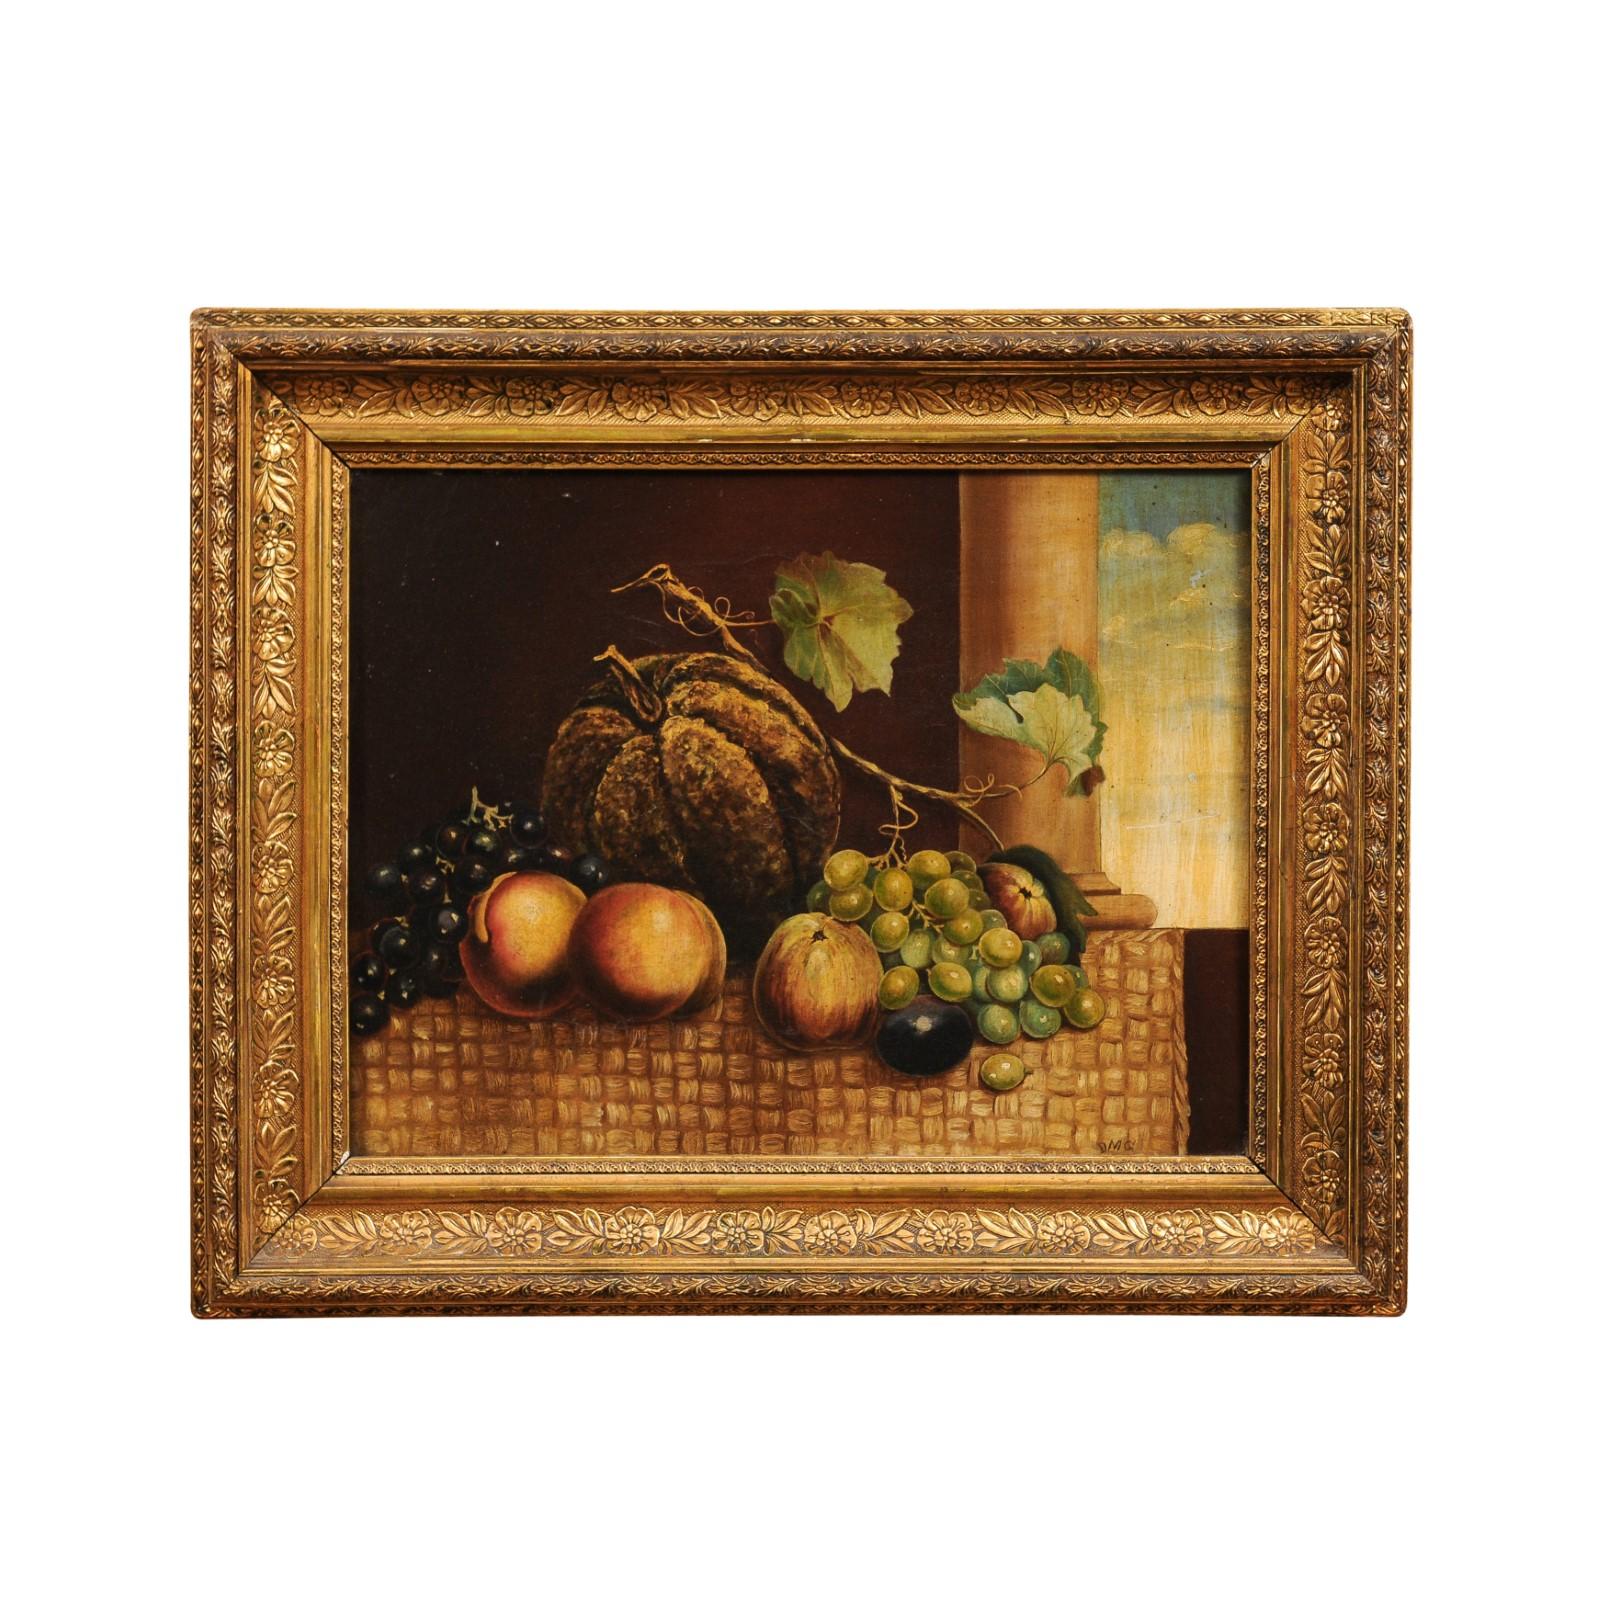 Ein italienisches Stillleben in Öl auf Leinwand aus dem 19. Jahrhundert, das Früchte vor einer Säule und einem offenen Himmel zeigt, in einem Rahmen aus Goldholz. Dieses im 19. Jahrhundert in Italien entstandene Stillleben in Öl auf Leinwand zeigt